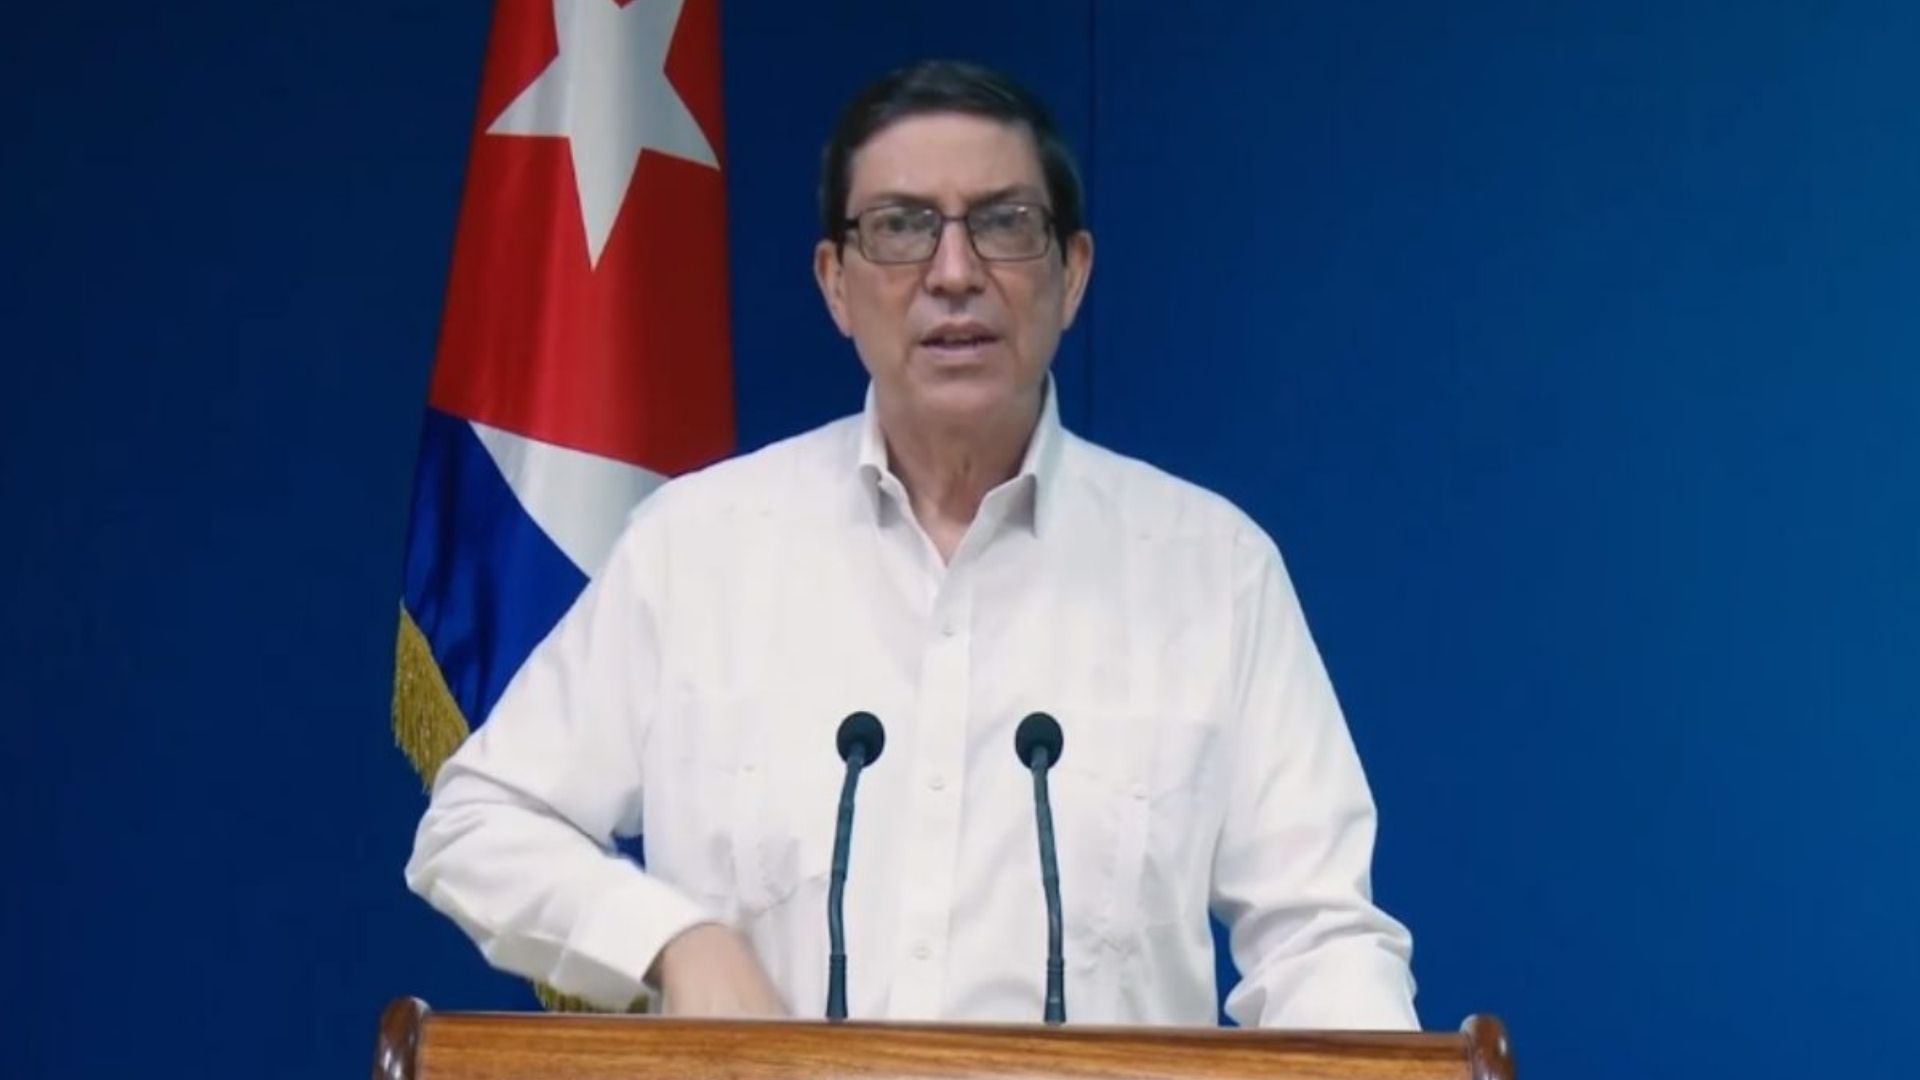 Rodríguez Parrilla: a la UE "no le asiste derecho alguno o autoridad moral para intervenir en cuestiones que solo competen al Estado cubano"